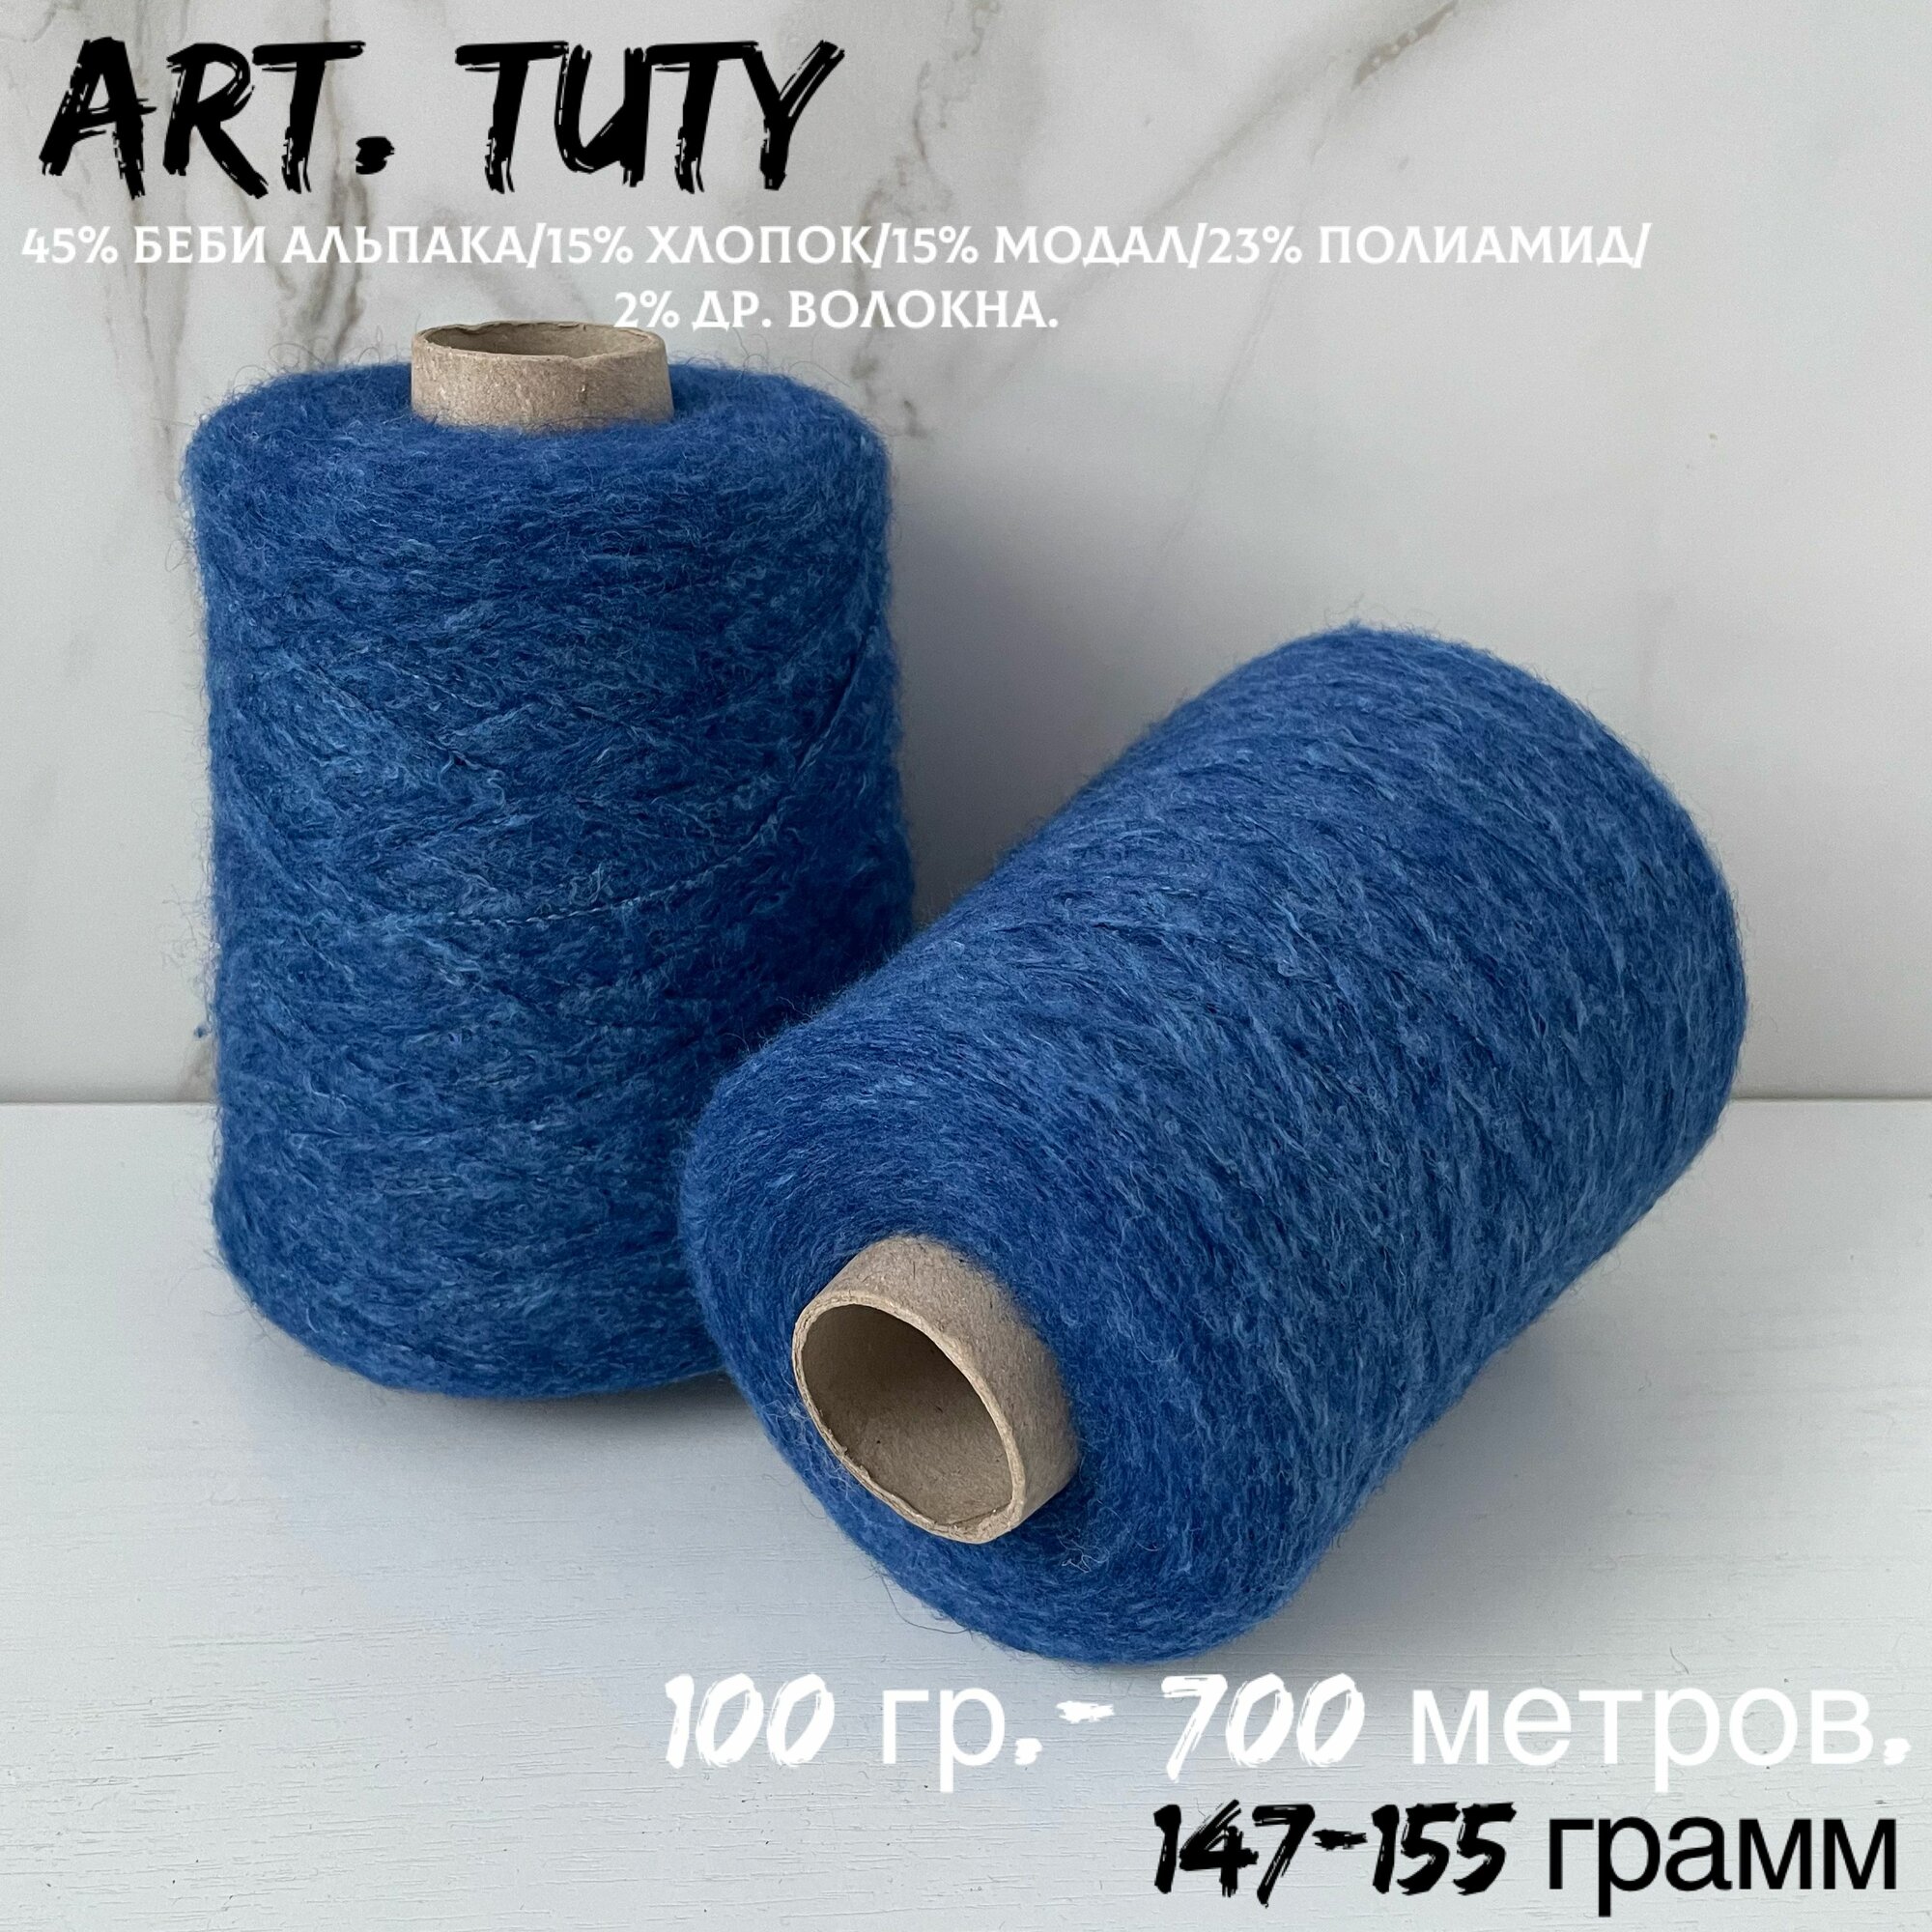 Итальянская бобинная пряжа для вязания art. TUTY беби альпака/меринос, 147-155 грамм